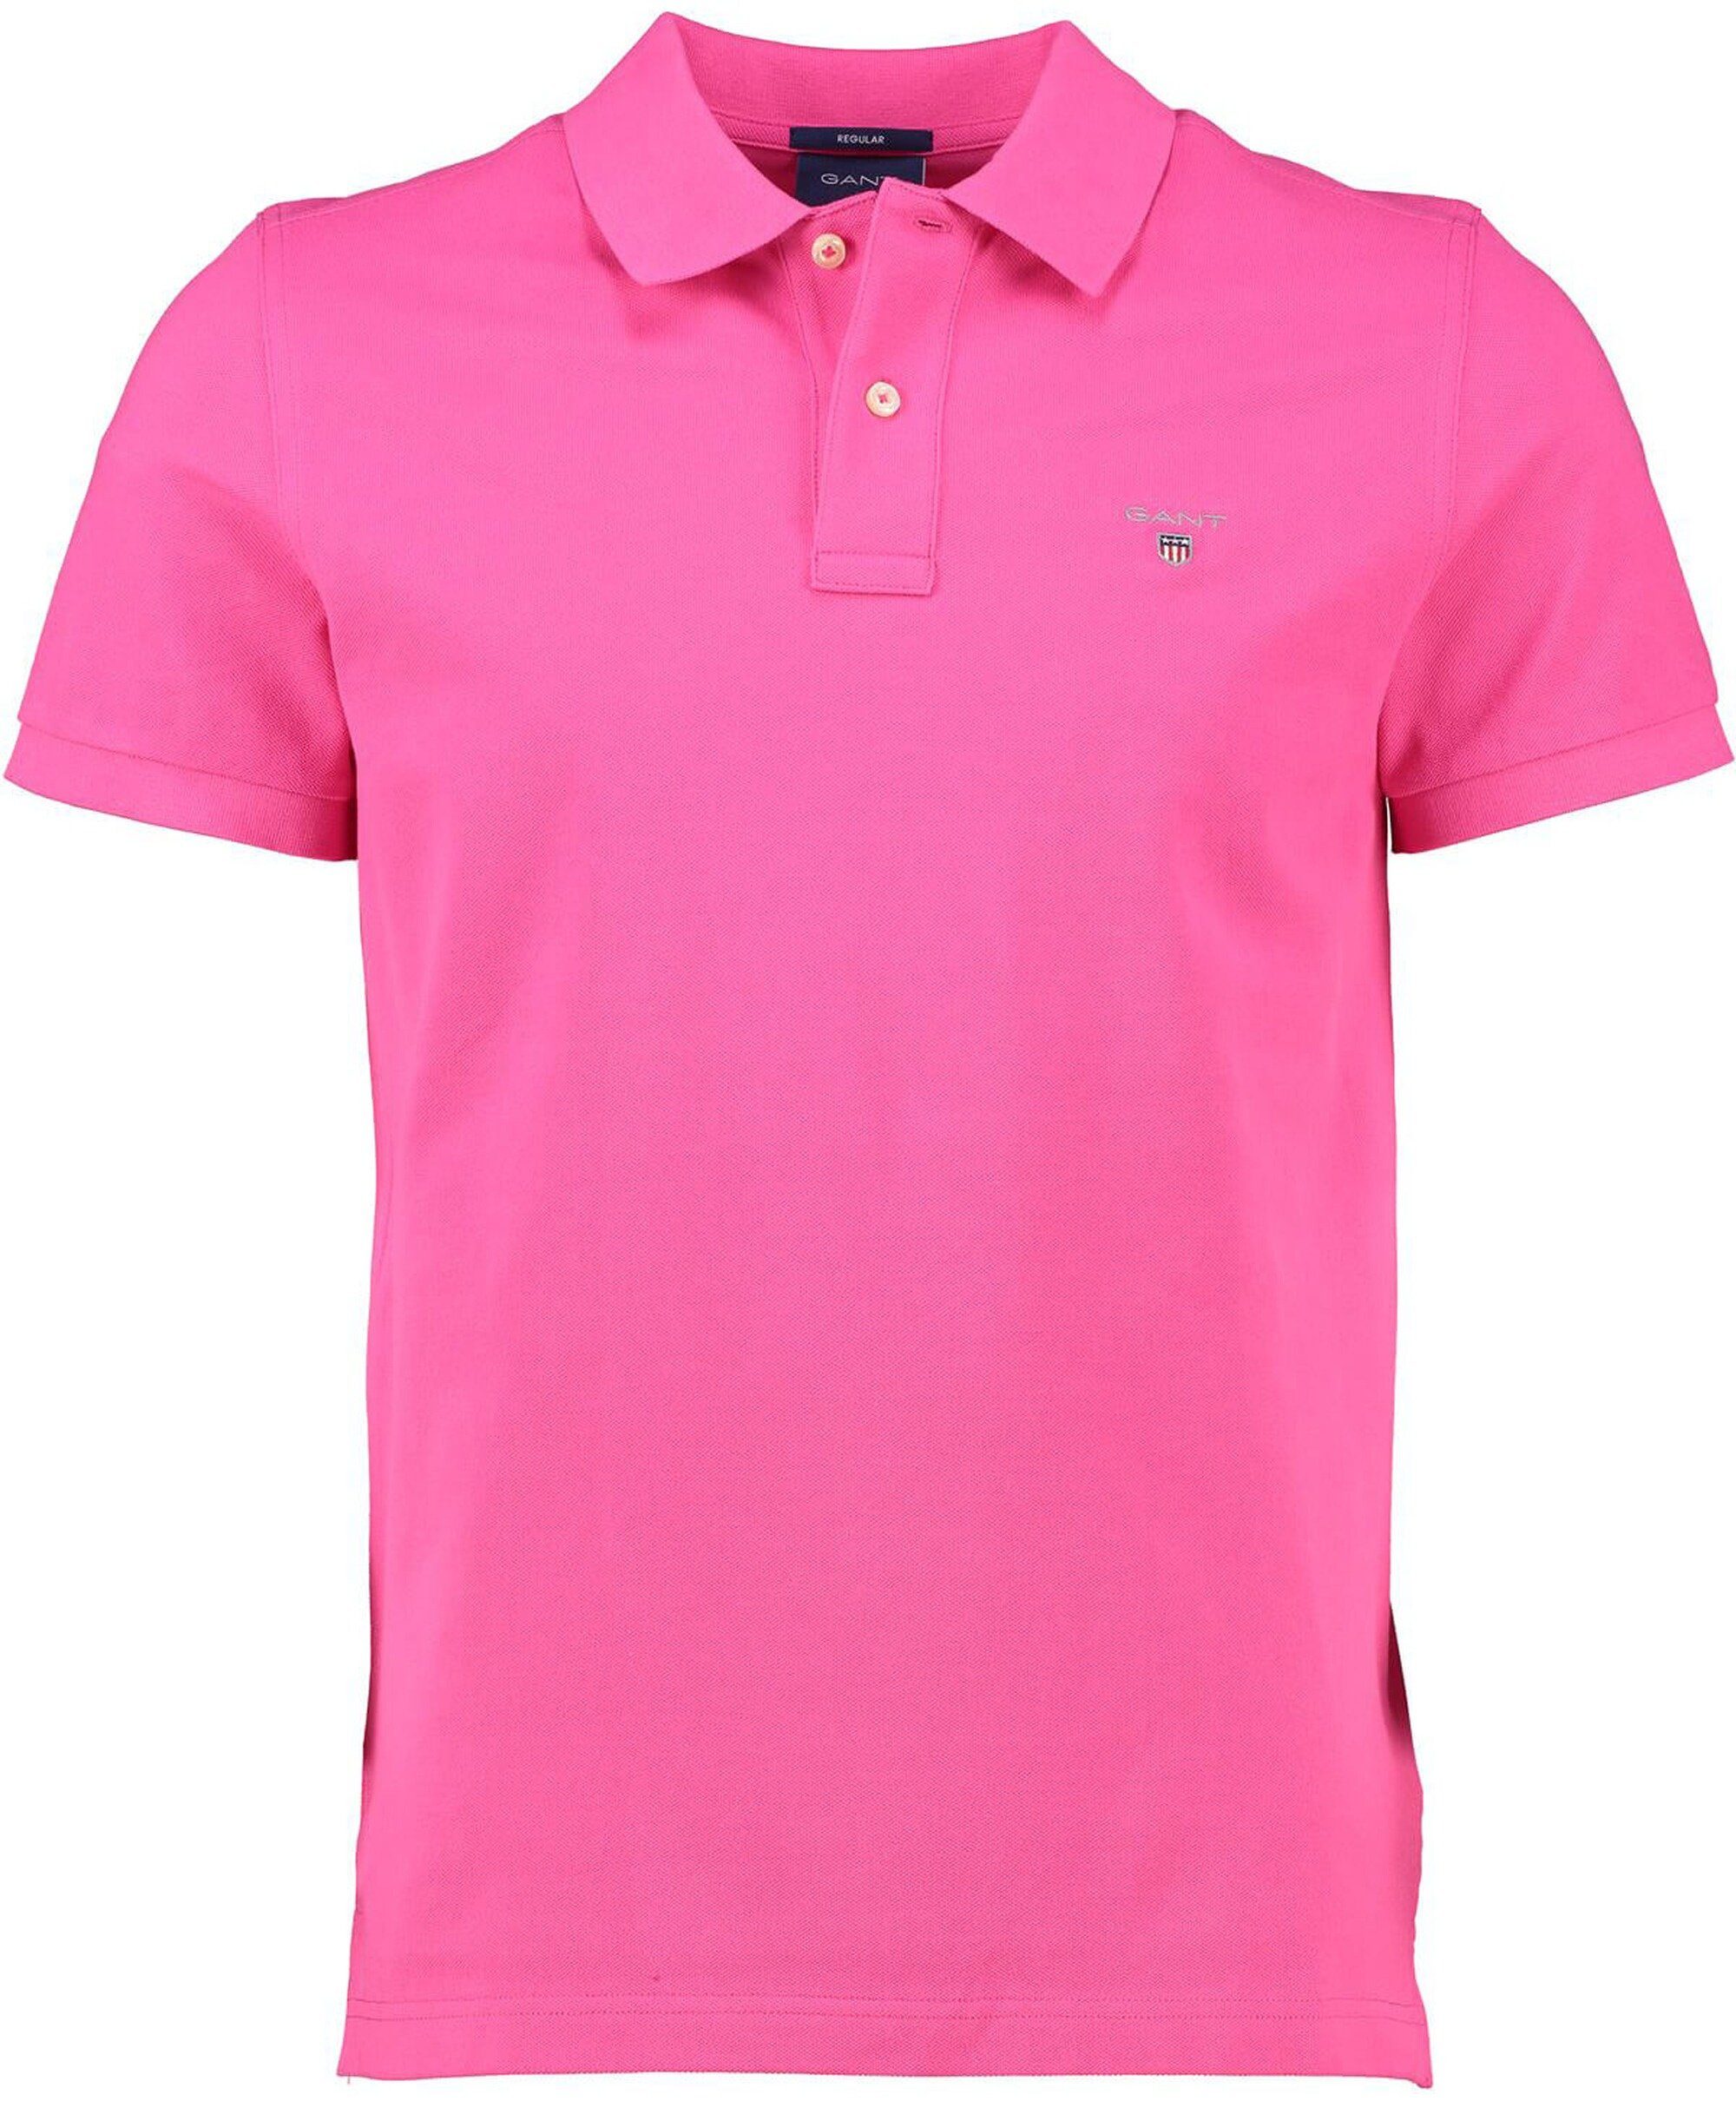 Gant Poloshirt pink hyper GANT Rugger Original Polo-Shirt pink